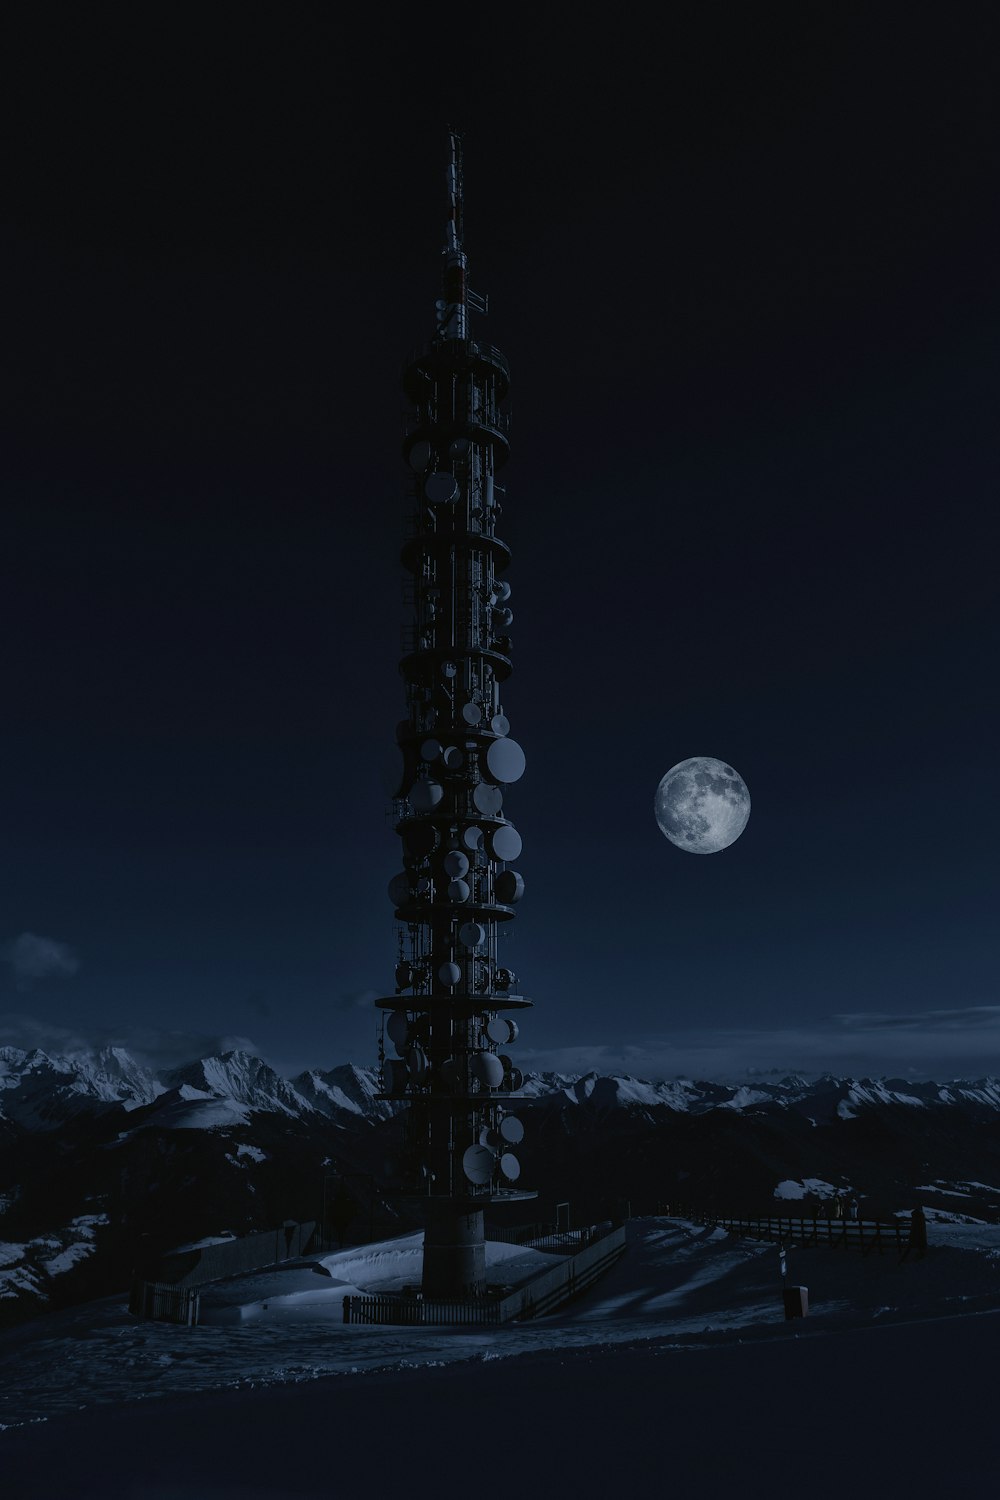 Torre en la nieve bajo la luna llena